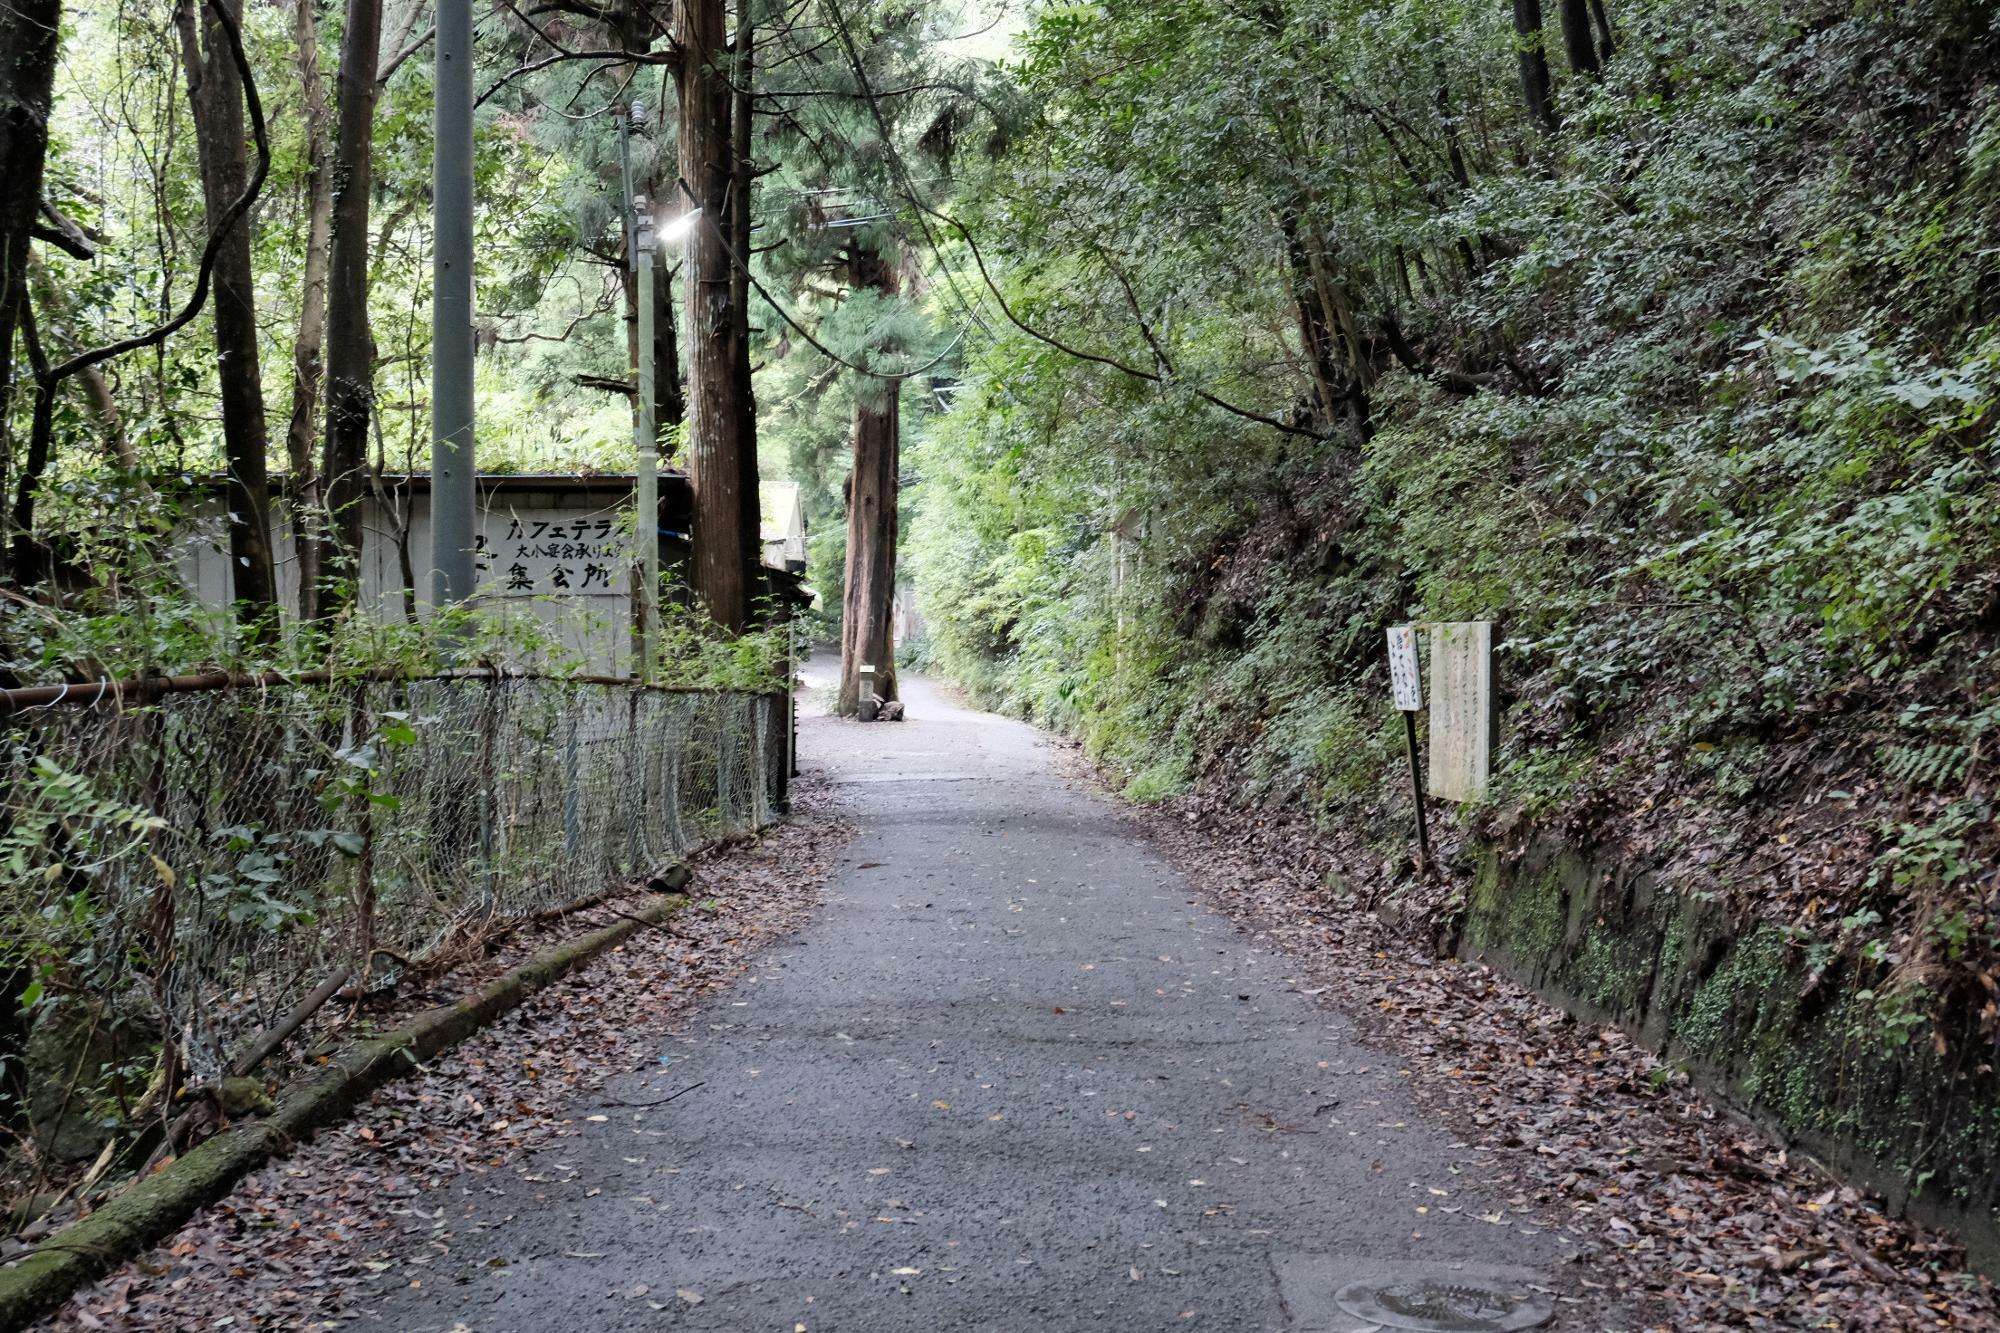 「大阪府みどりの百選」にも選ばれた犬鳴山。犬鳴山中には大小四十八滝があり、四季折々の美しい景観を楽しむことができます